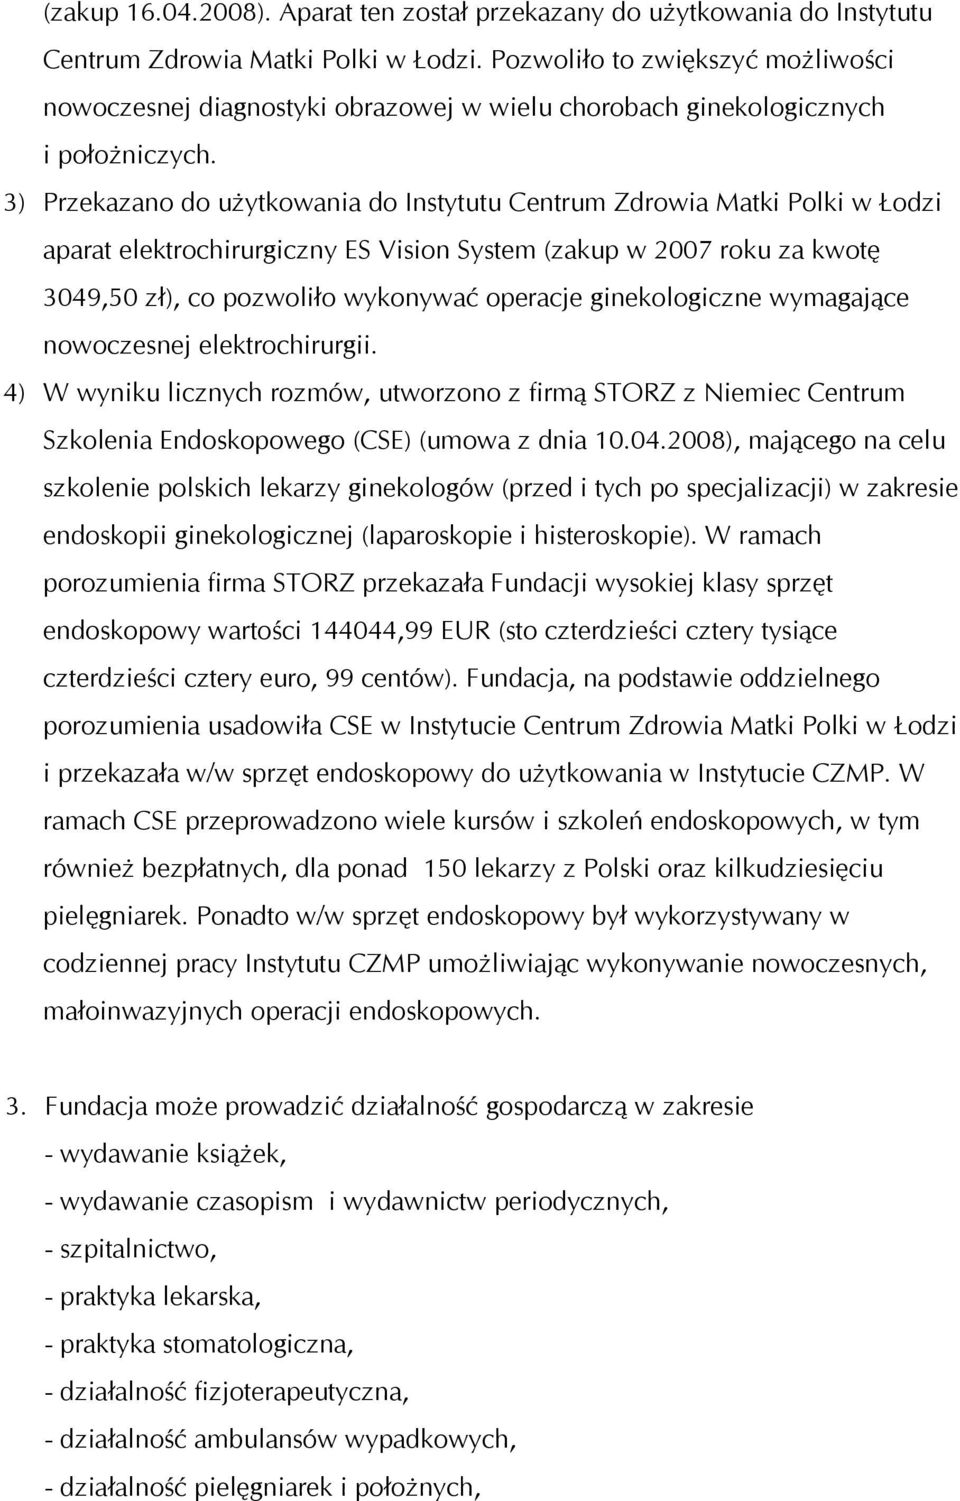 3) Przekazano do użytkowania do Instytutu Centrum Zdrowia Matki Polki w Łodzi aparat elektrochirurgiczny ES Vision System (zakup w 2007 roku za kwotę 3049,50 zł), co pozwoliło wykonywać operacje